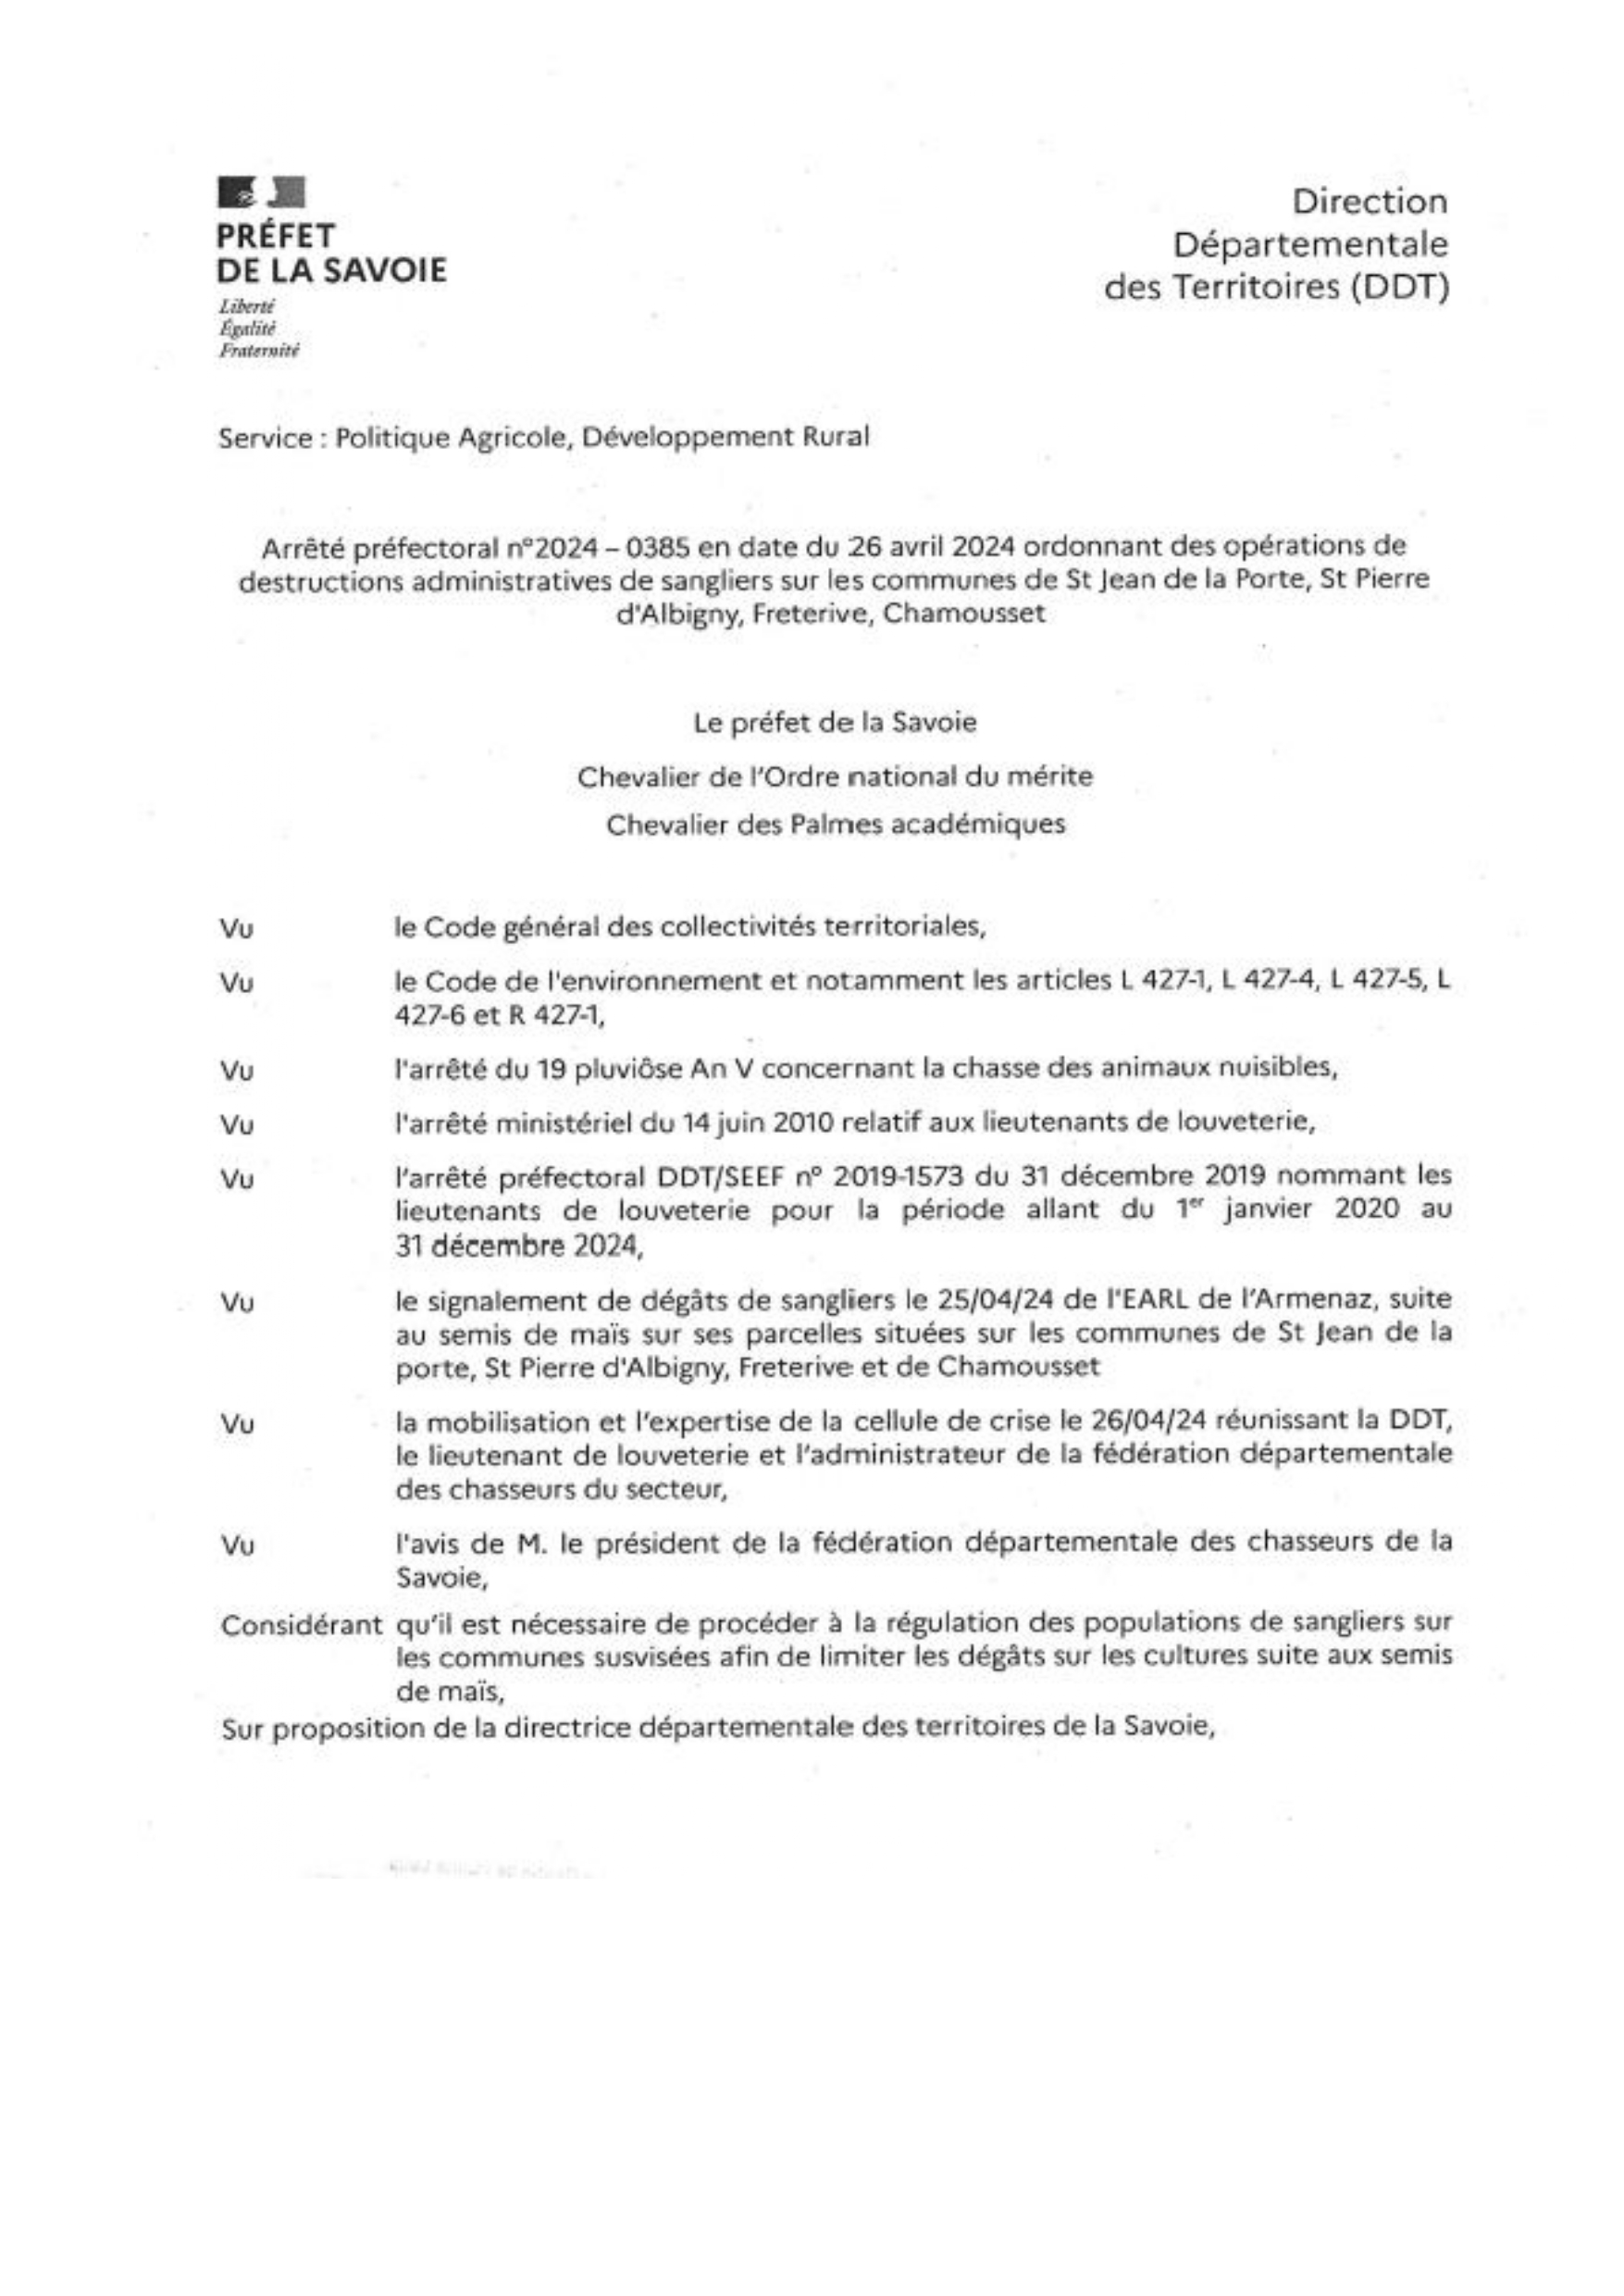 régulation sangliers page 1_page-0001.jpg